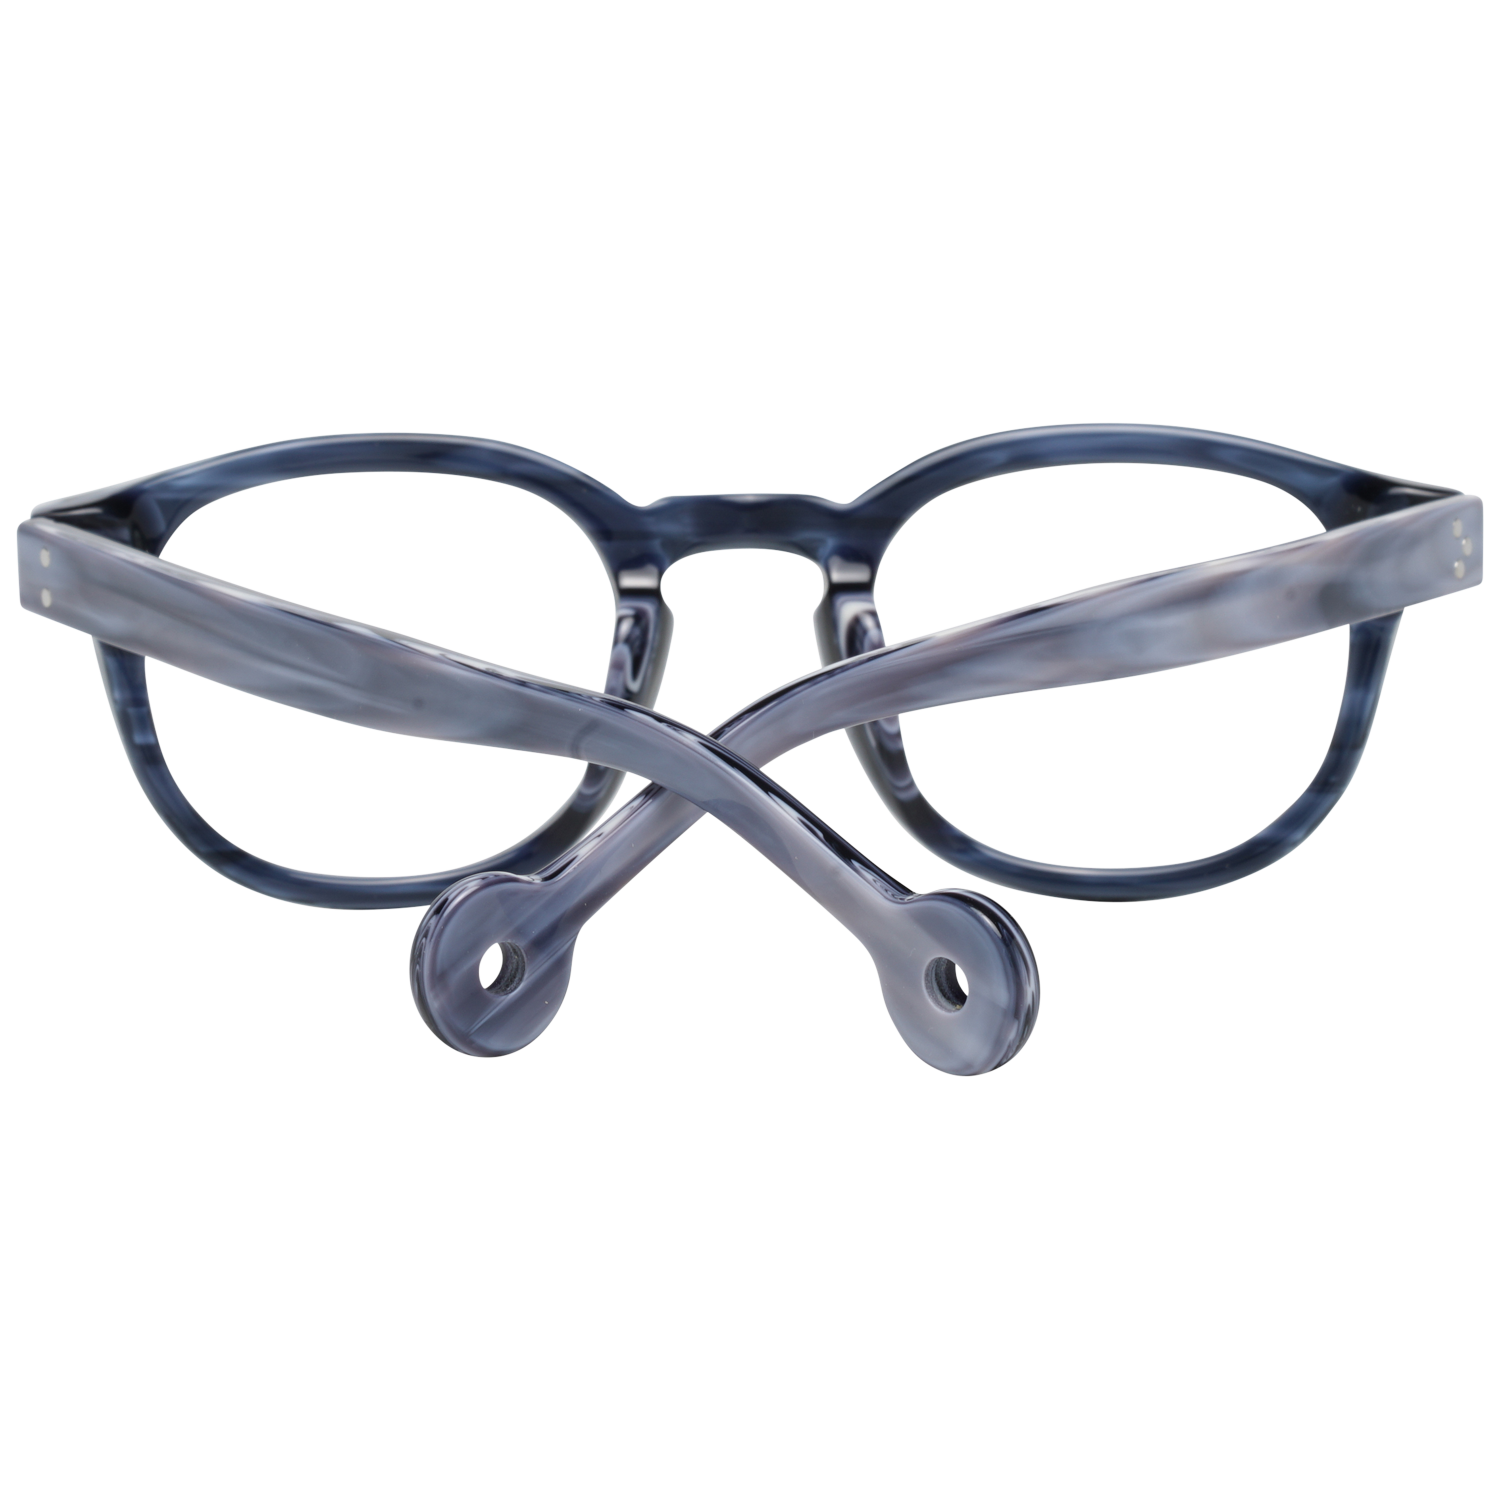 Hally & Son Frames Hally & Son Optical Frame HS500V 50 49 Eyeglasses Eyewear UK USA Australia 